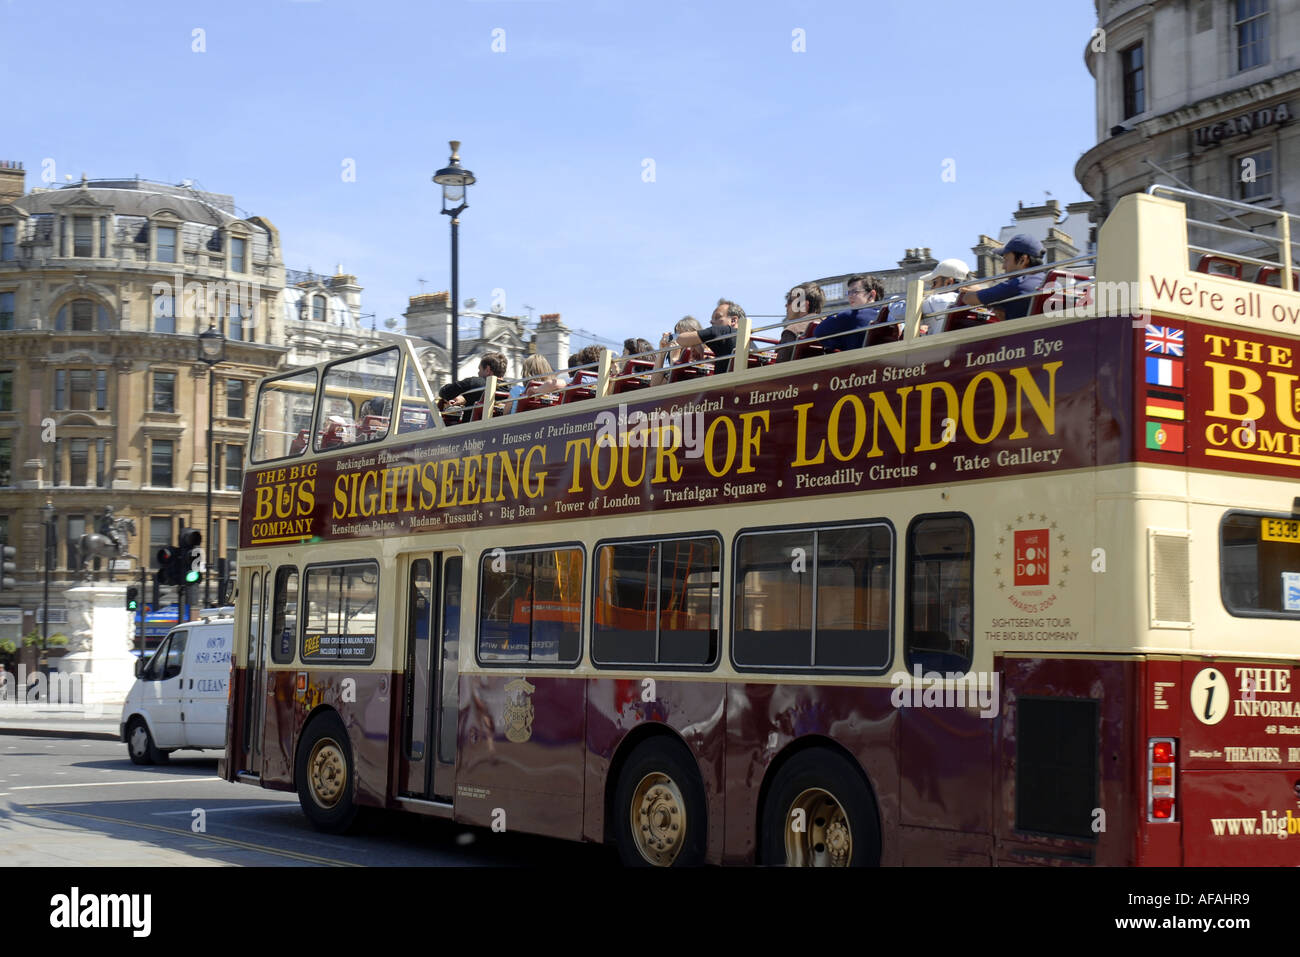 Bus touristique à Trafalgar Square, Londres, Angleterre. Juin 2006t Banque D'Images